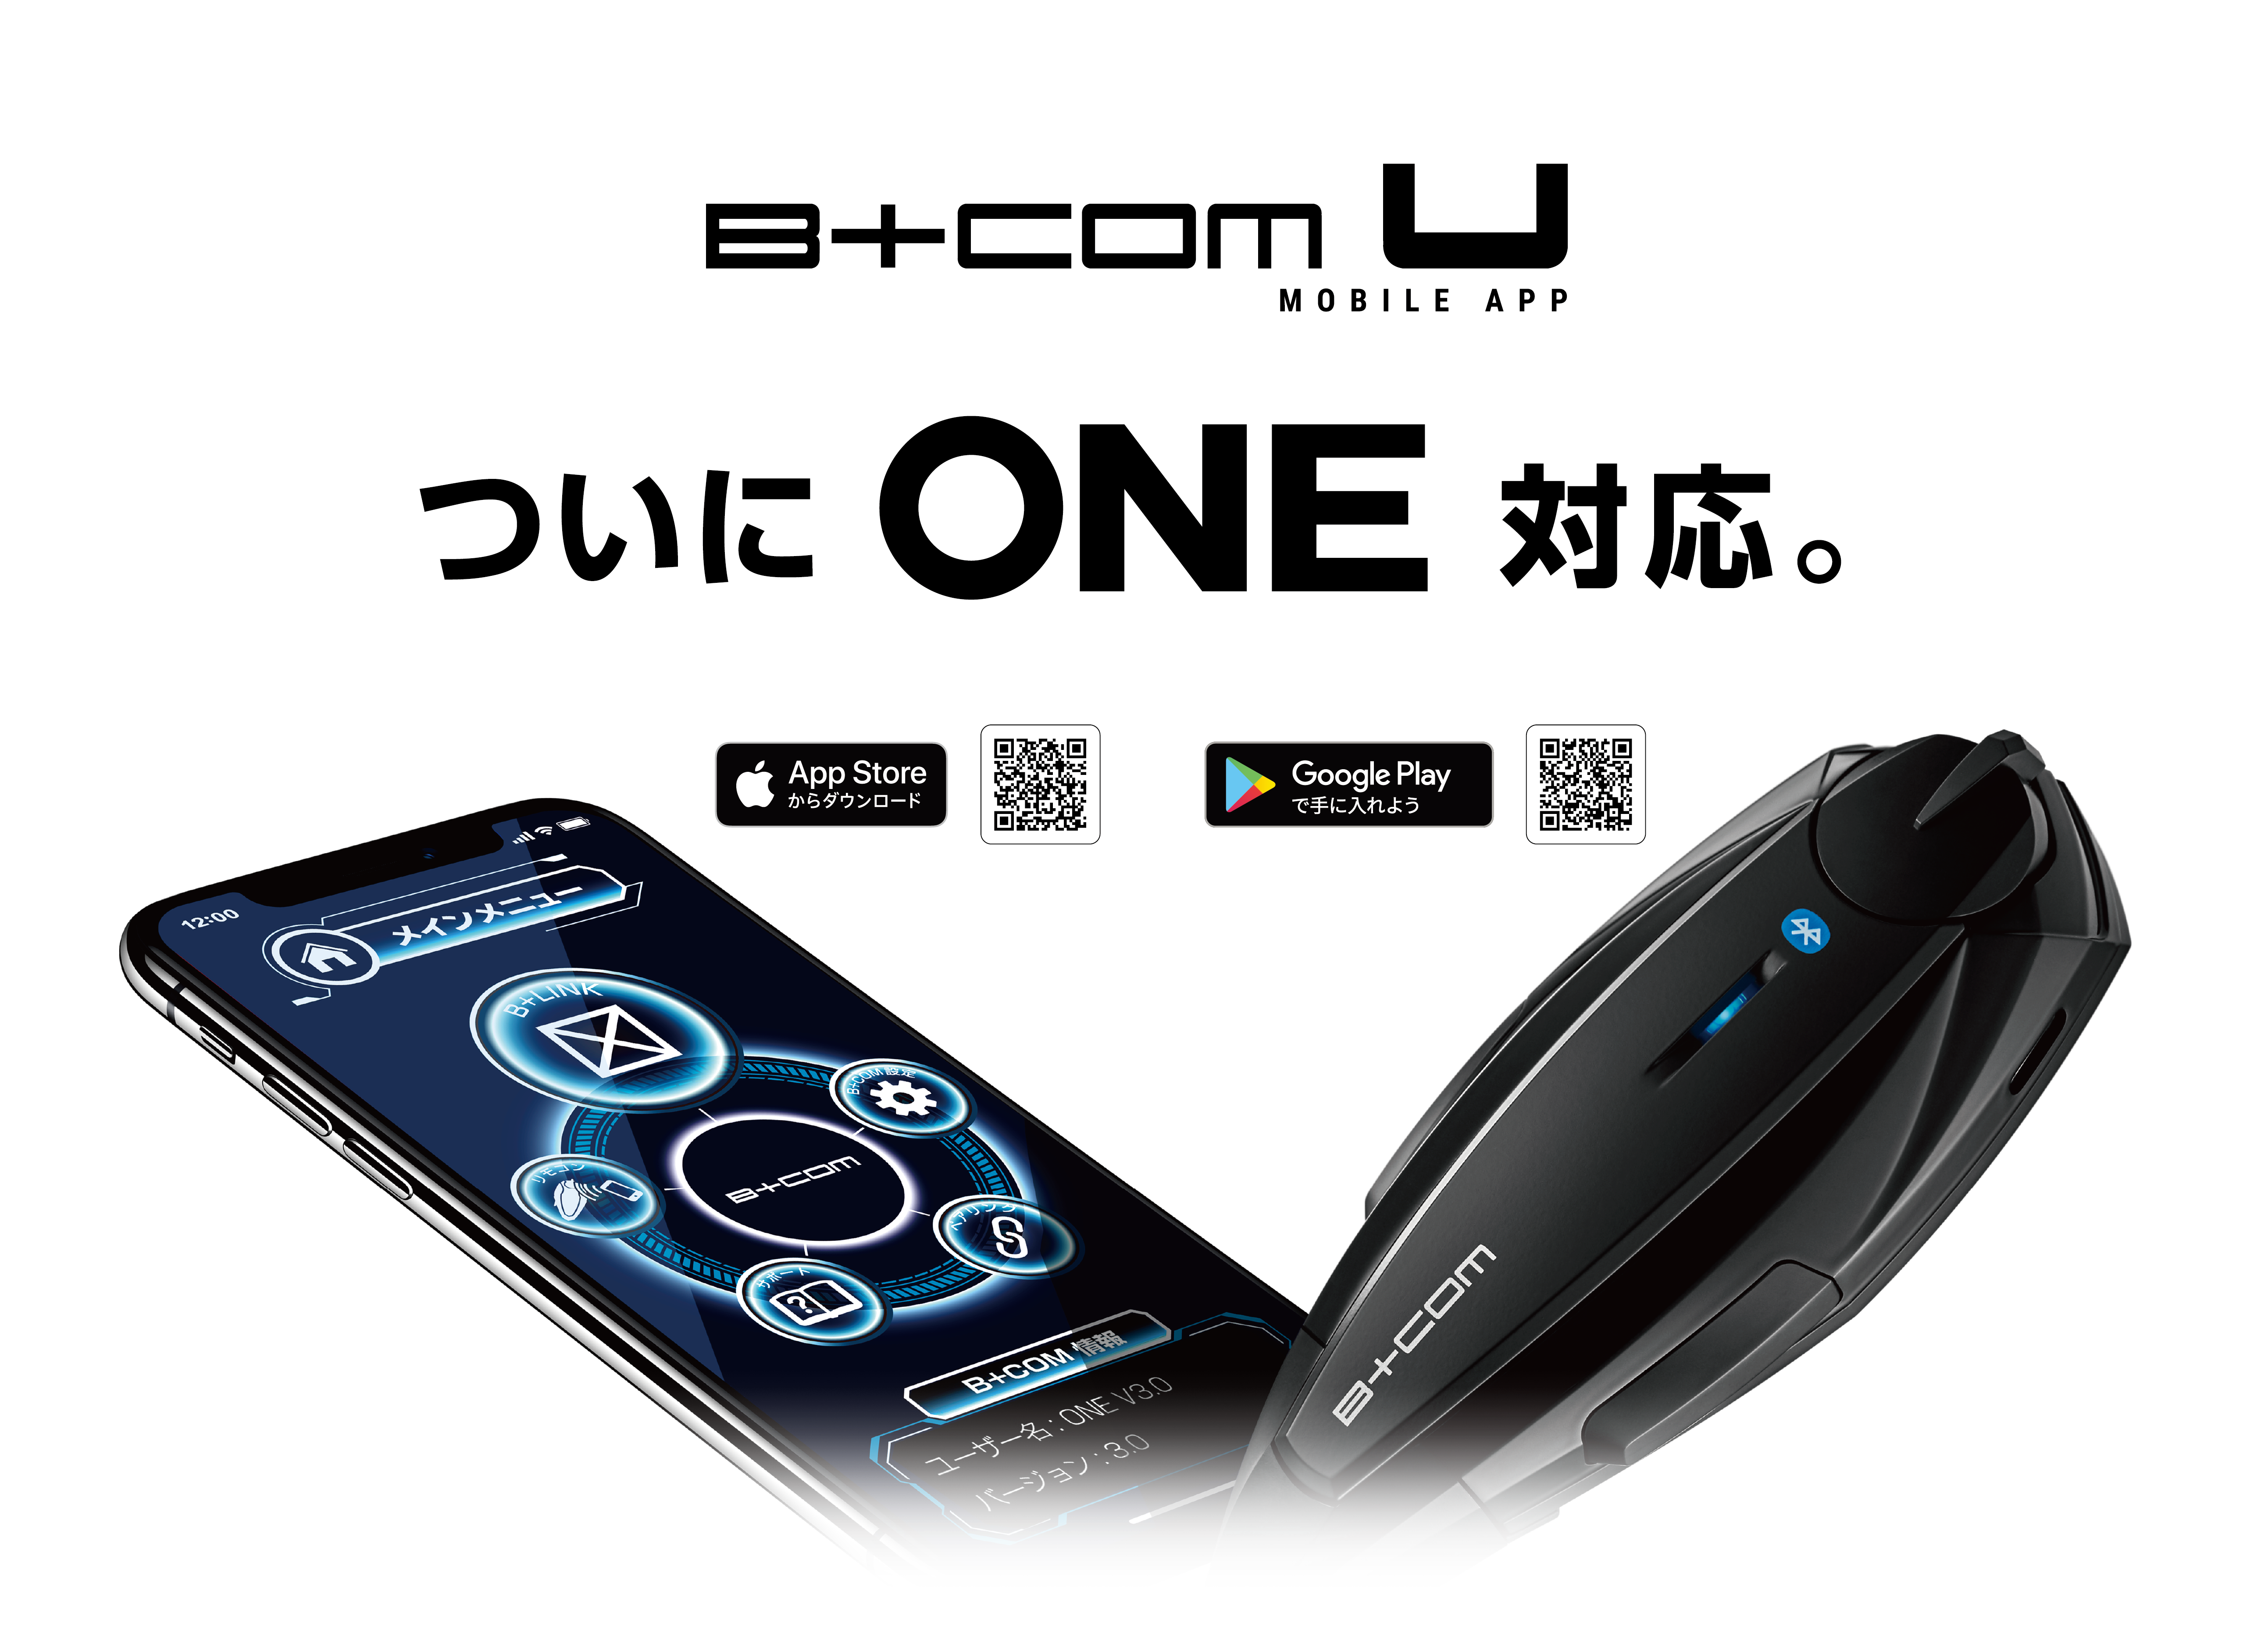 「B+COM ONE」スマートフォンアプリ対応